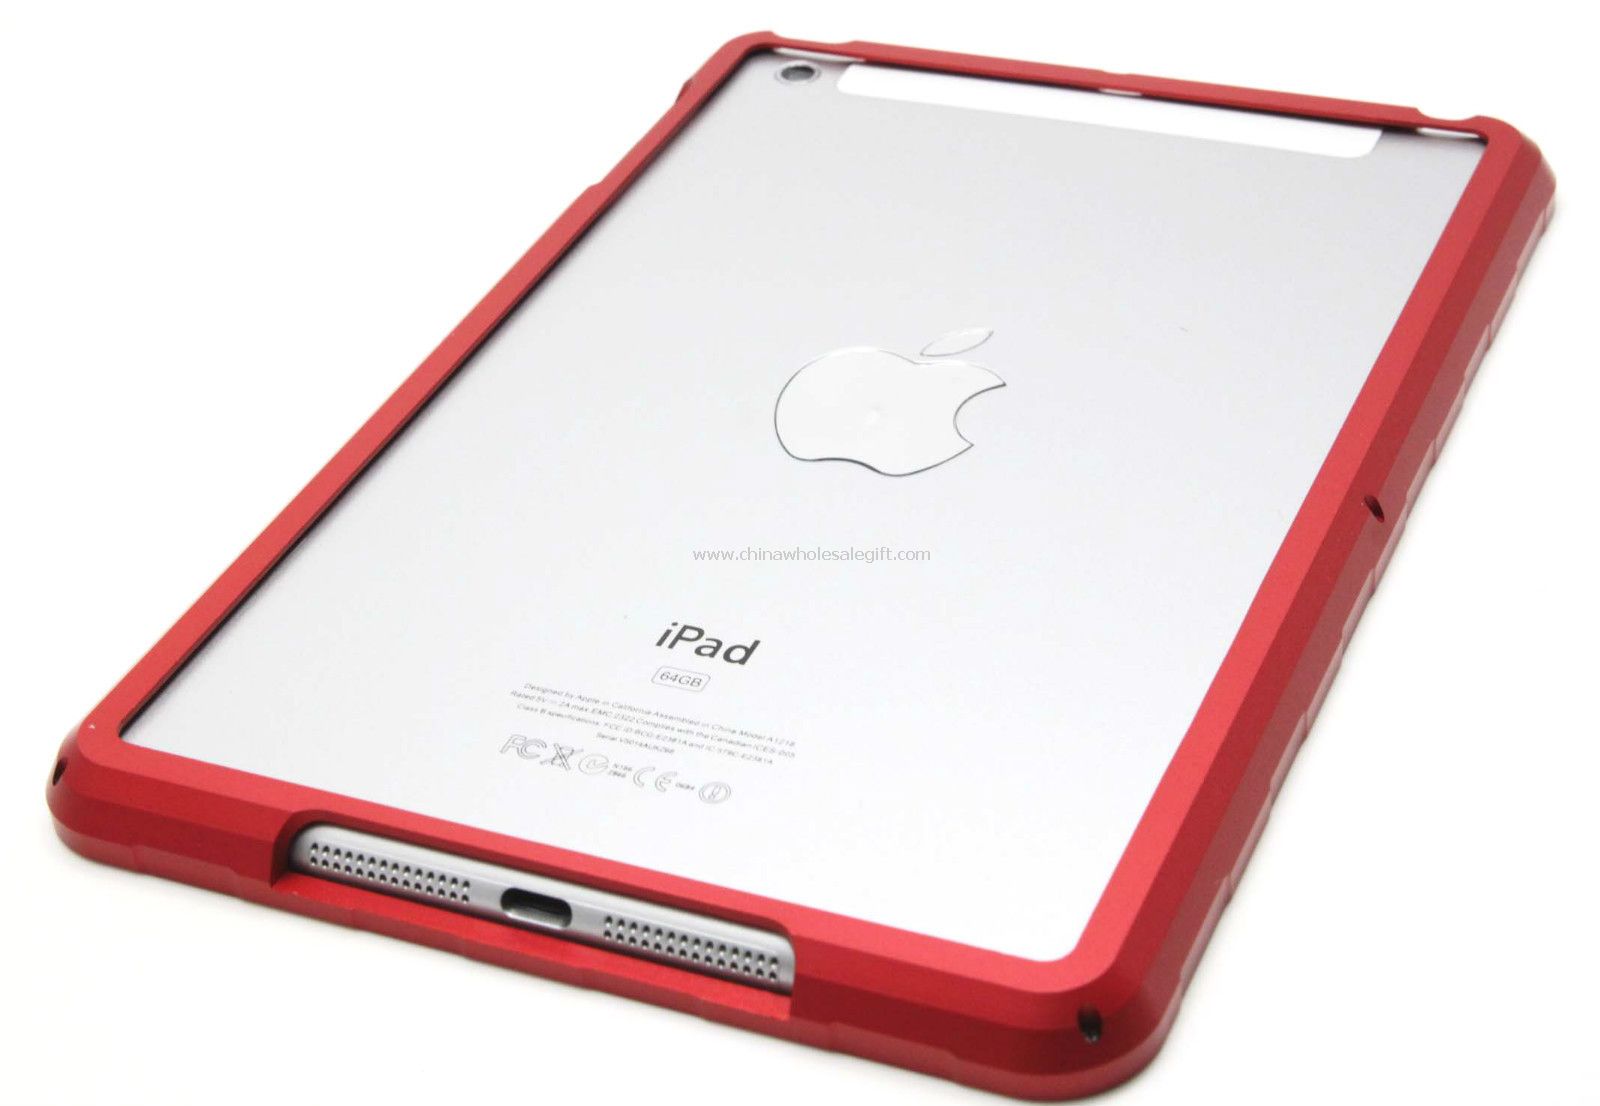 Premium Aluminium métal alliage pare-chocs Hard Case pour iPad Mini